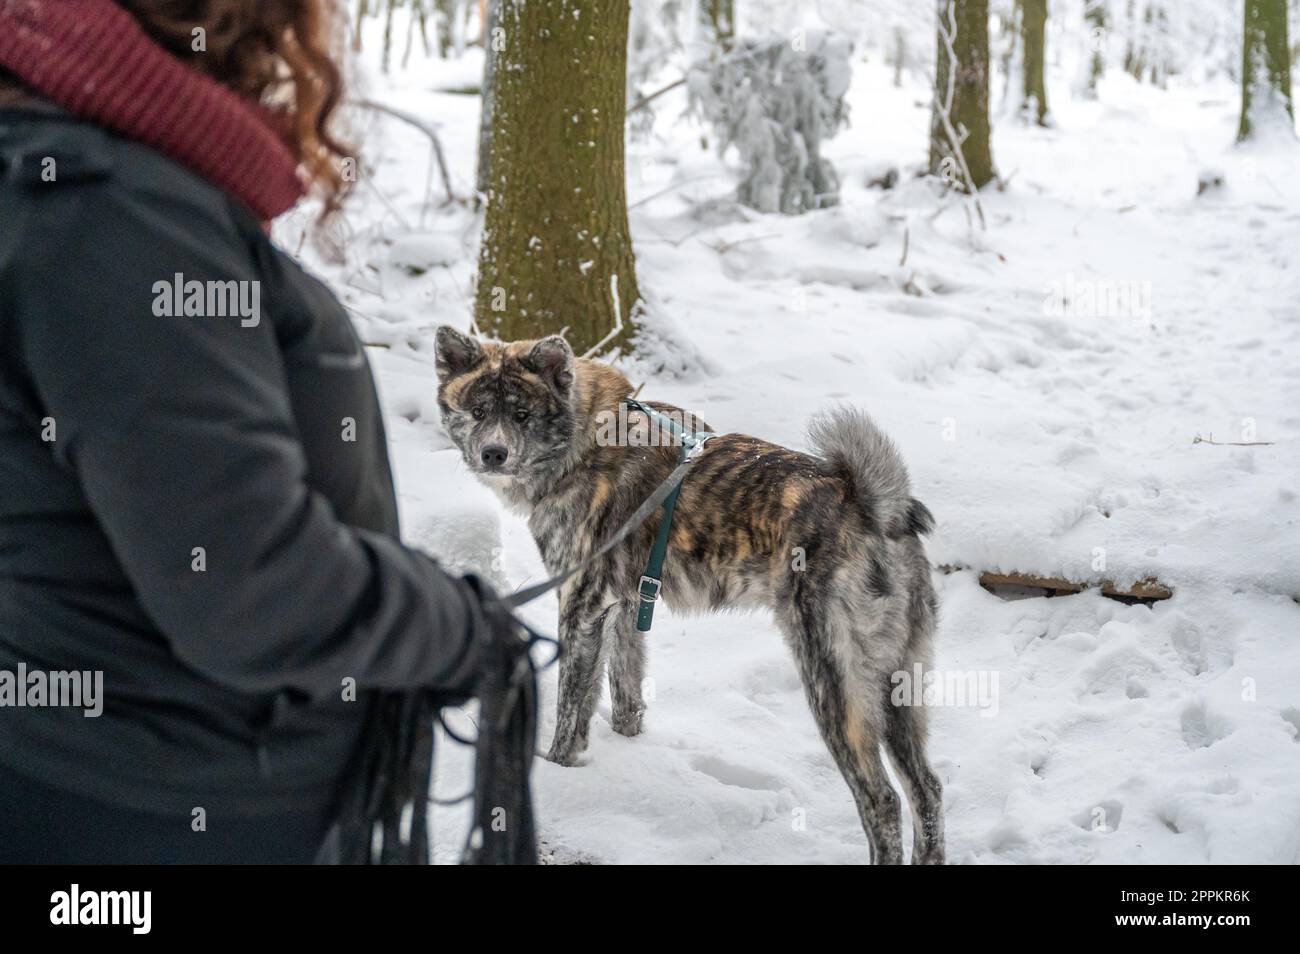 Padrone di donna con capelli ricci marroni in piedi accanto al suo cane akita inu con pelliccia grigia e arancione durante l'inverno con neve Foto Stock